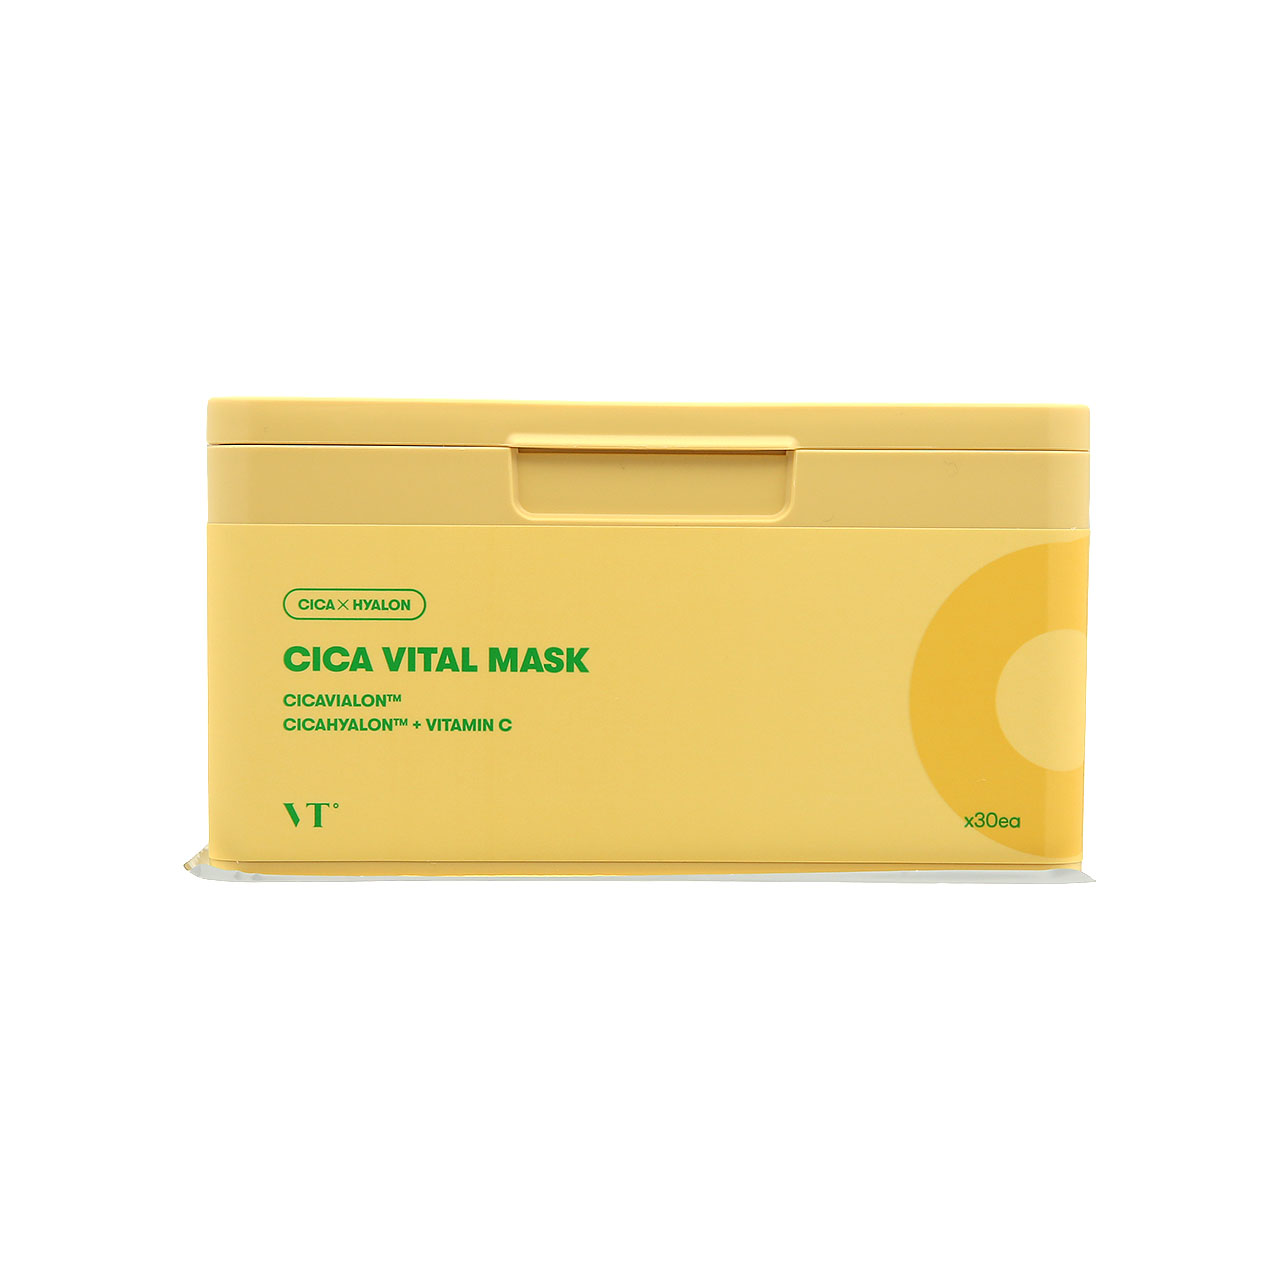 VT Cica Vital Mask 30pcs | Sasa Global eShop